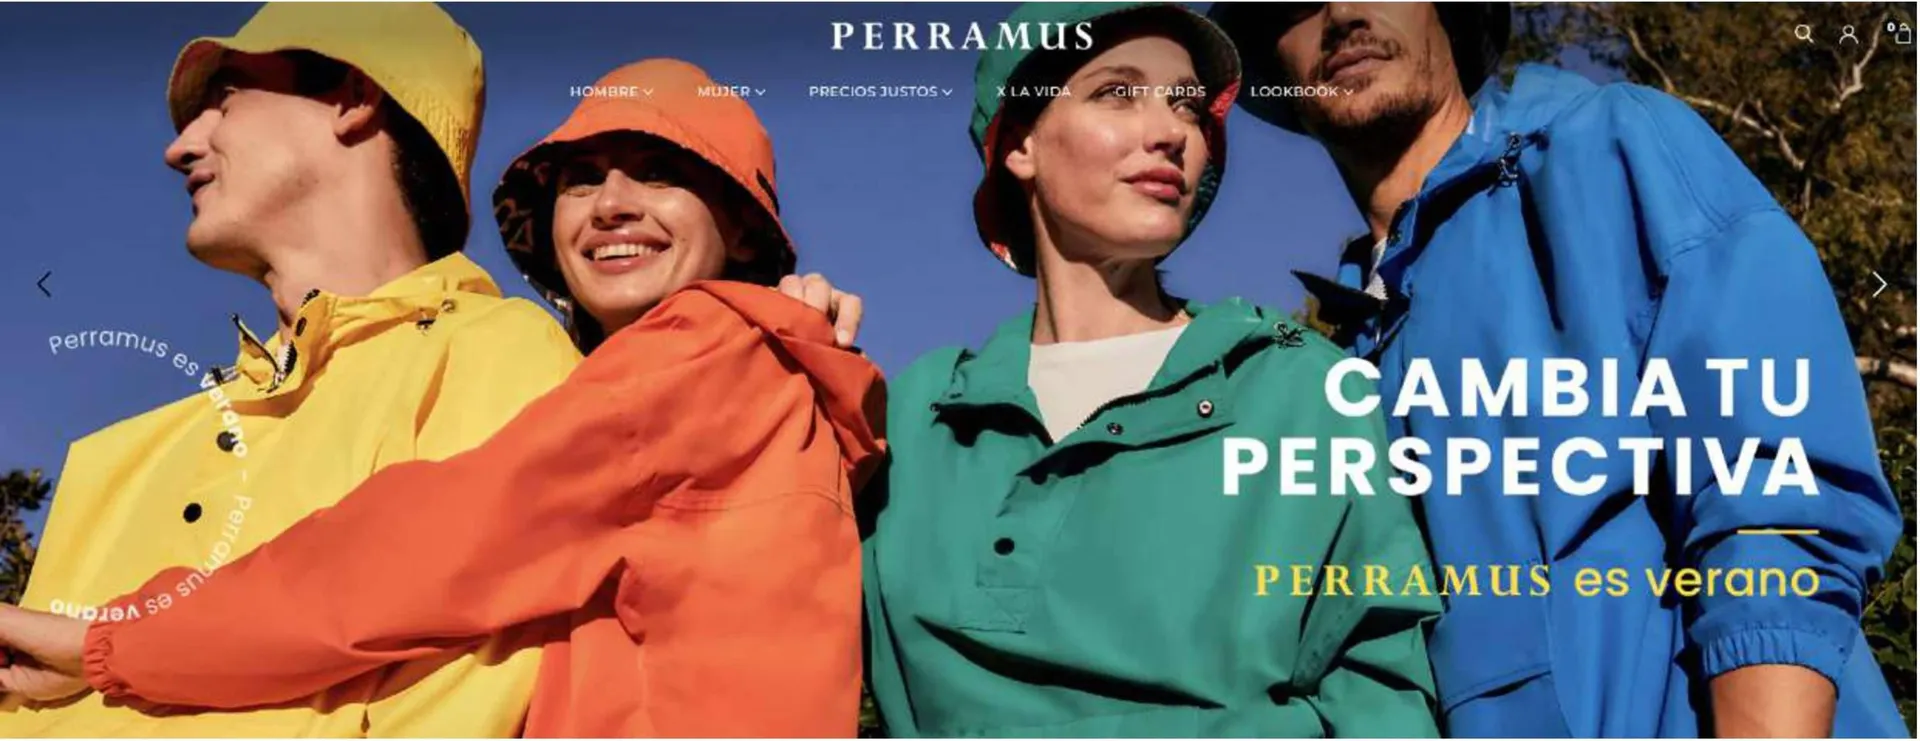 Catálogo Perramus - 1